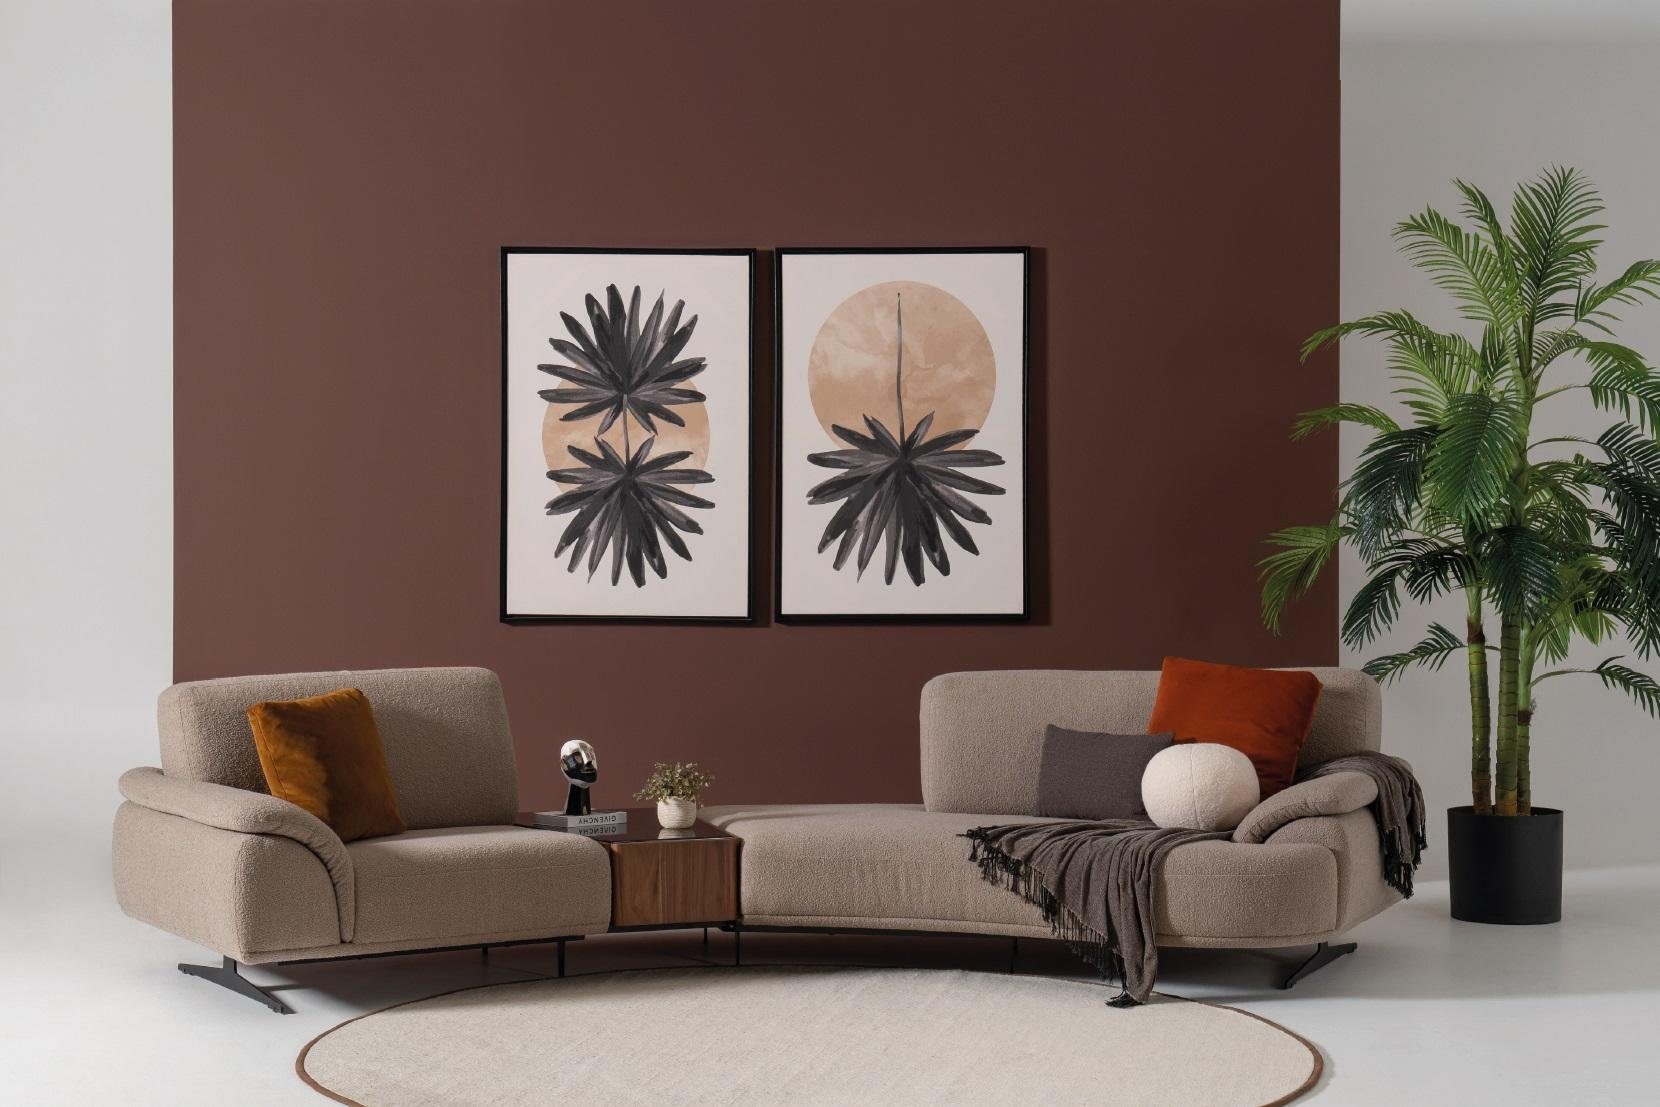 JVmoebel Sofa, Wohnzimmer Design Sofa 5 Sitz Textil Couch Polster Sofas Neu braun